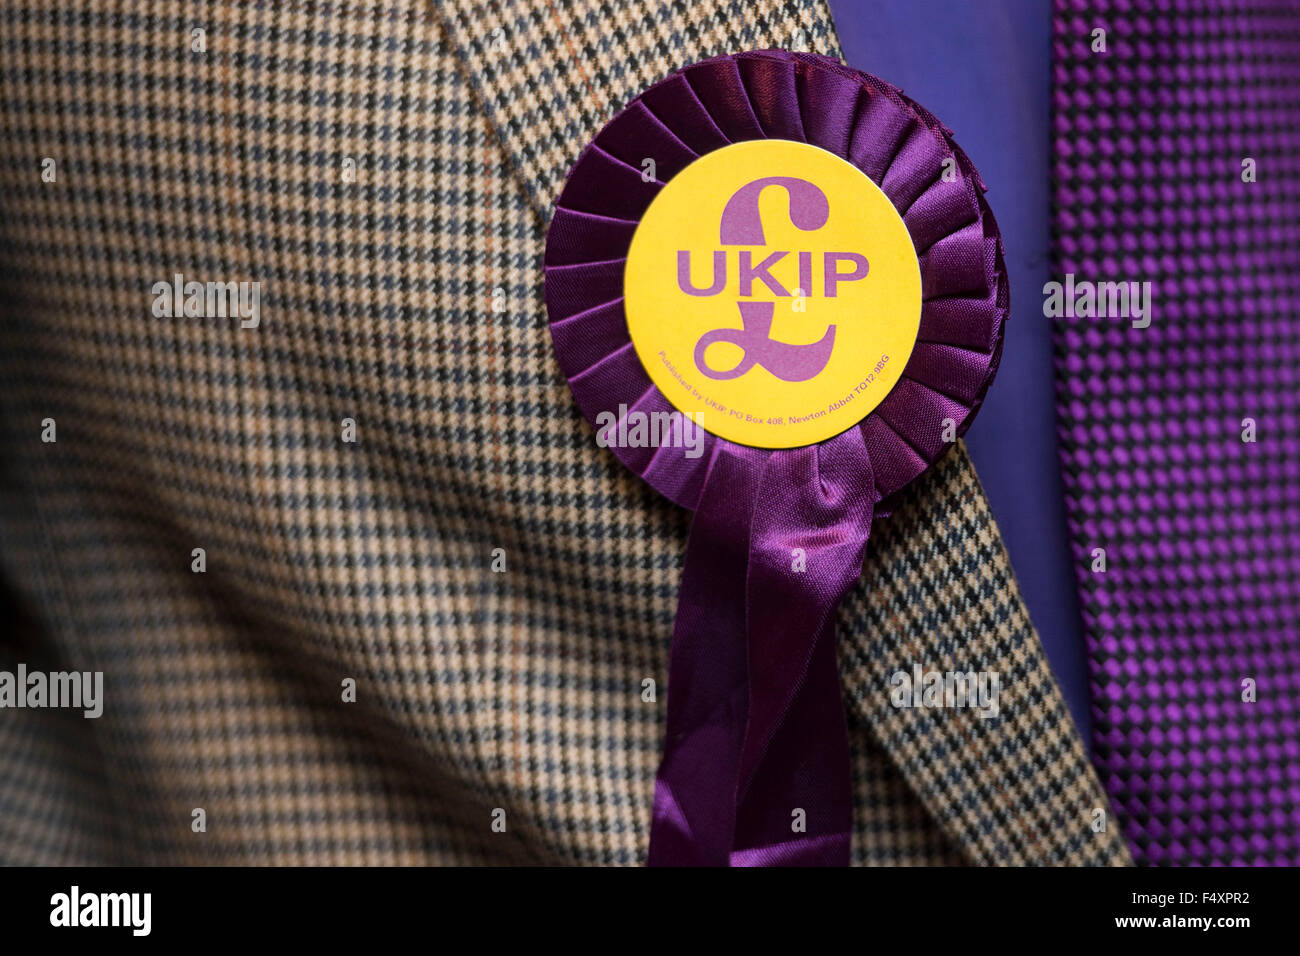 Un partido por la Independencia del Reino Unido (UKIP) roseta en una chaqueta de tweed. Foto de stock